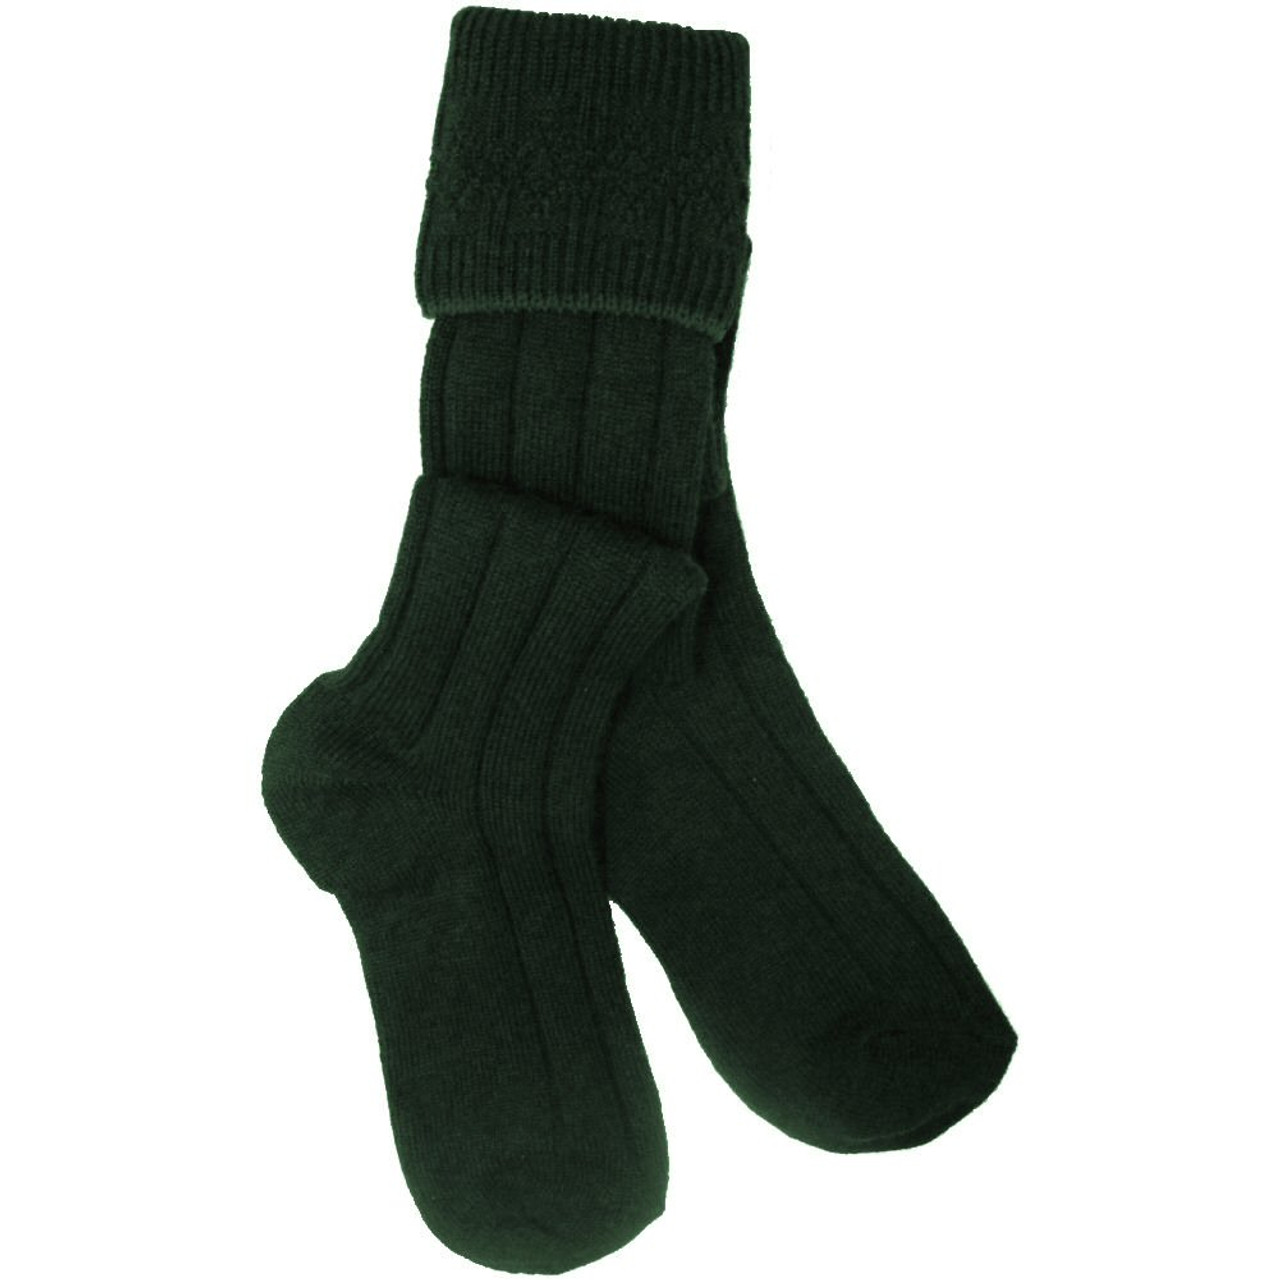 Bottle Green Plain Kilt Hose Socks